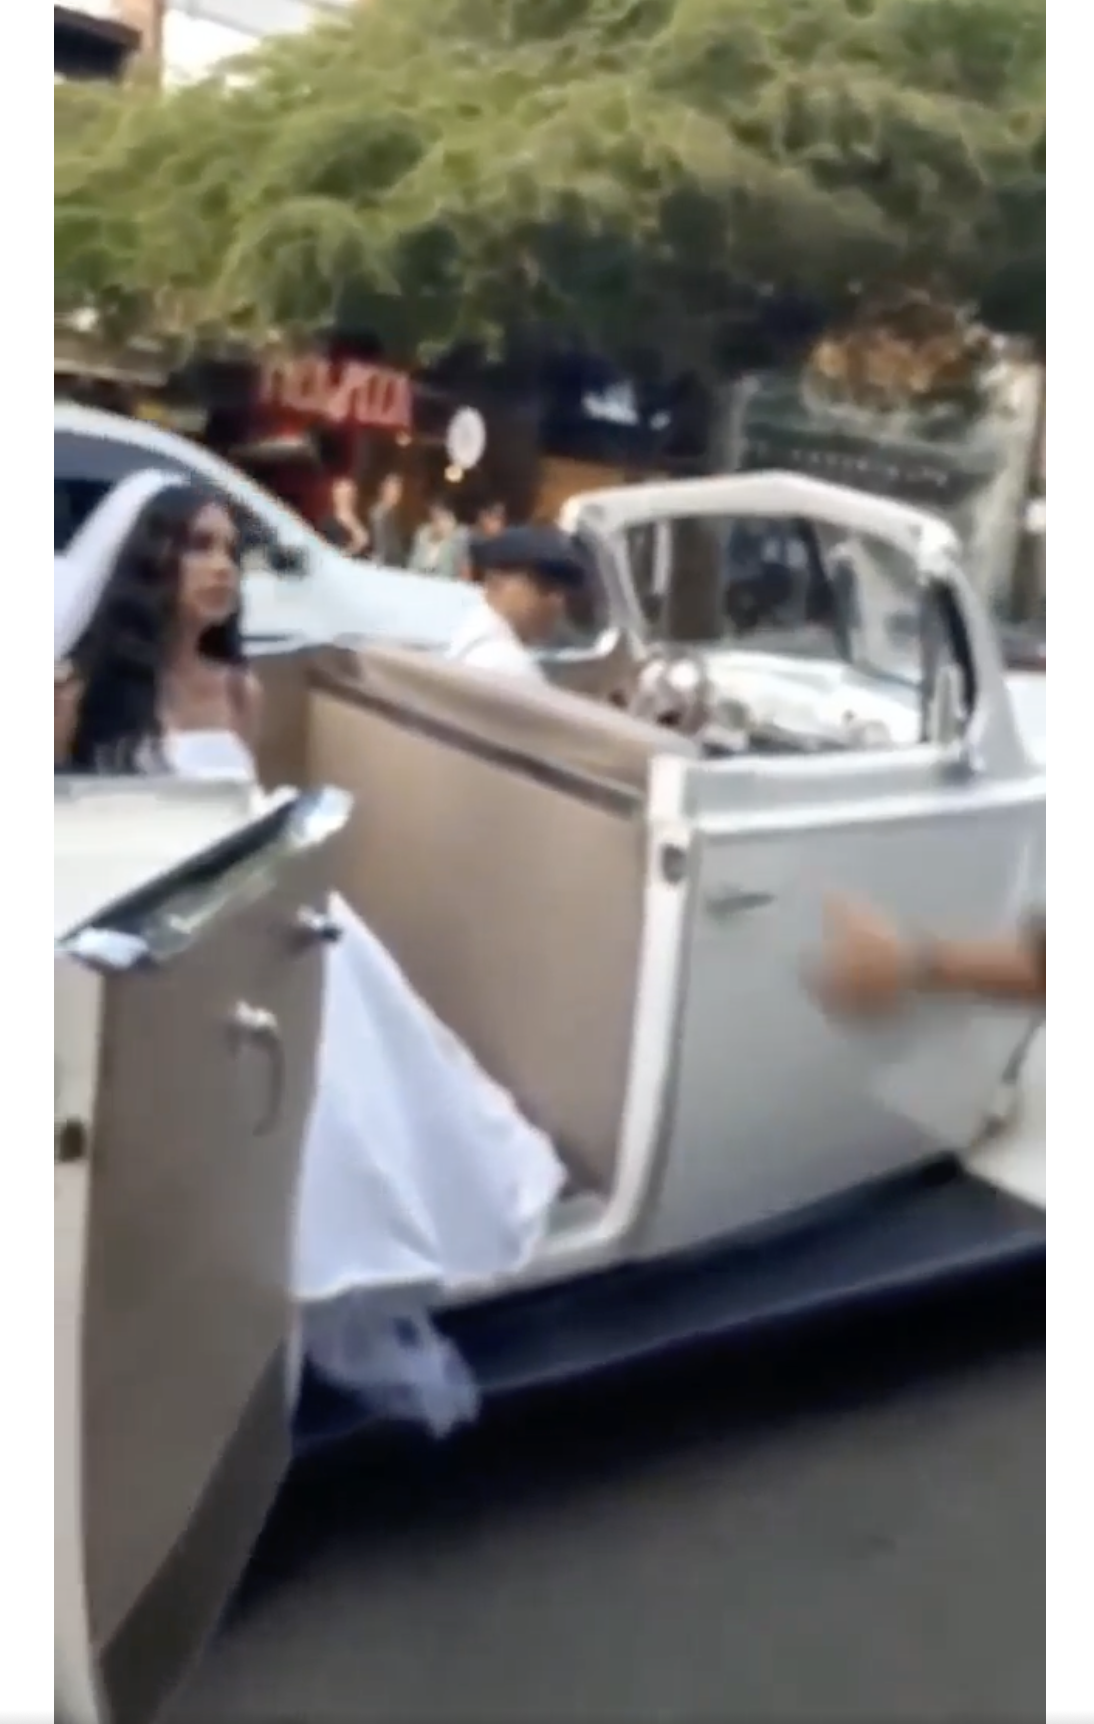 Eine Frau in einem weißen Brautkleid wird in einem klassischen Hochzeitsfahrzeug auf der Straße abgebildet. | Quelle: facebook.com/maspopulareventos